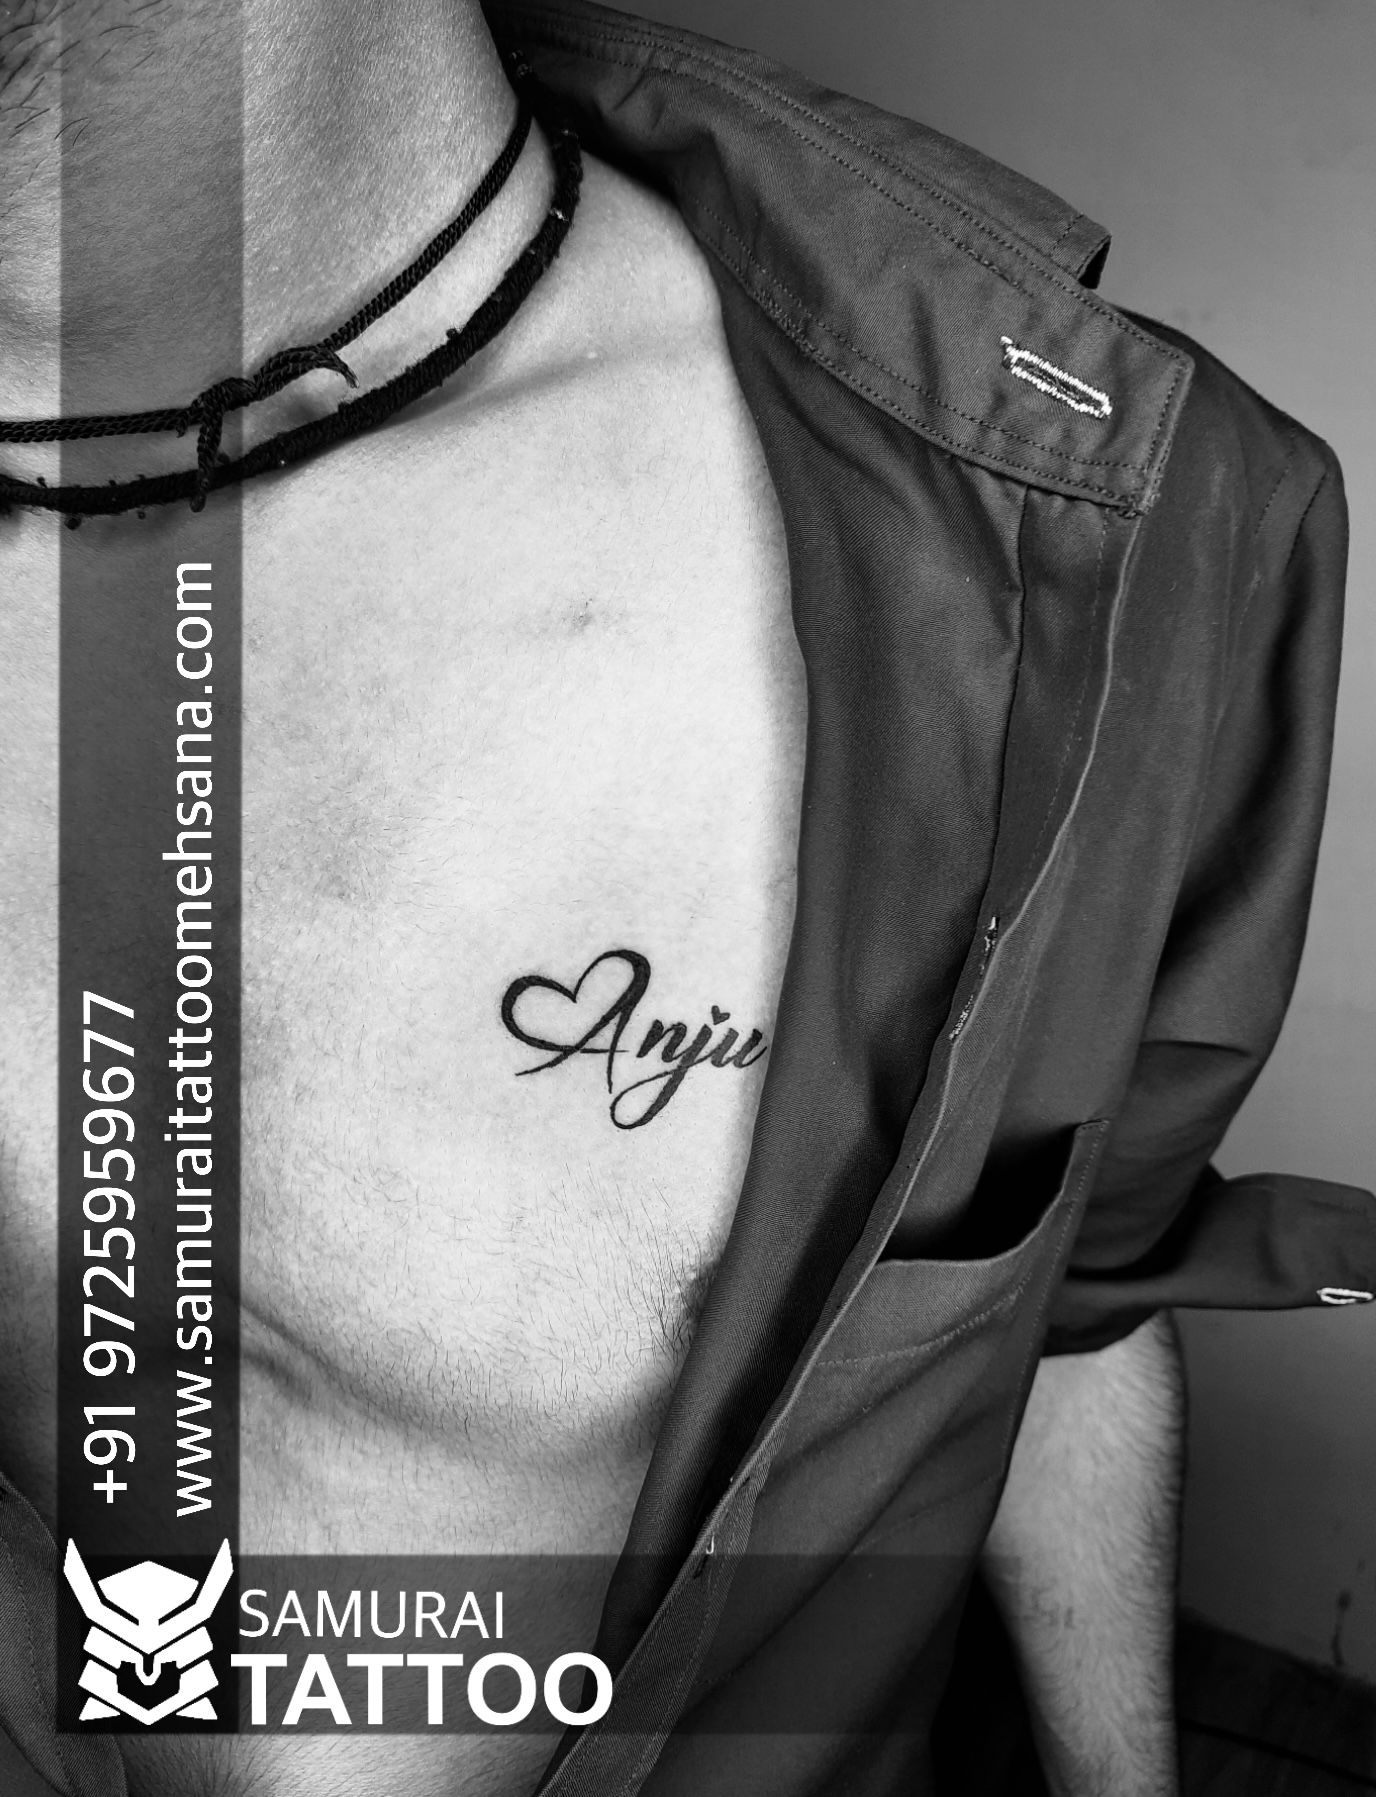 Tattoo uploaded by Deepak Deepu • Tattoodo